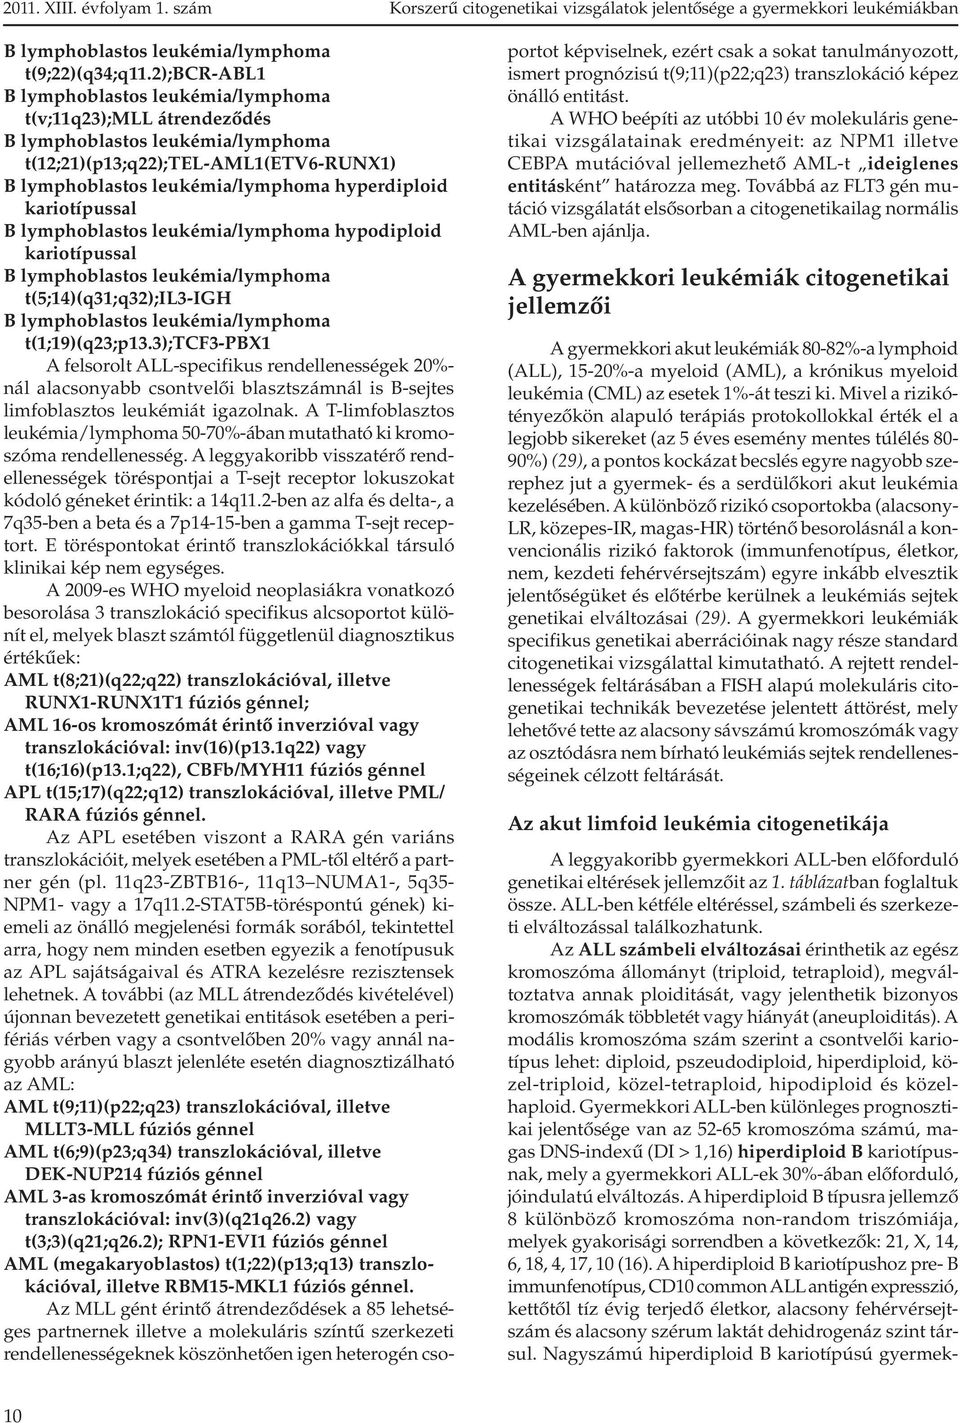 kariotípussal B lymphoblastos leukémia/lymphoma hypodiploid kariotípussal B lymphoblastos leukémia/lymphoma t(5;14)(q31;q32);il3-igh B lymphoblastos leukémia/lymphoma t(1;19)(q23;p13.